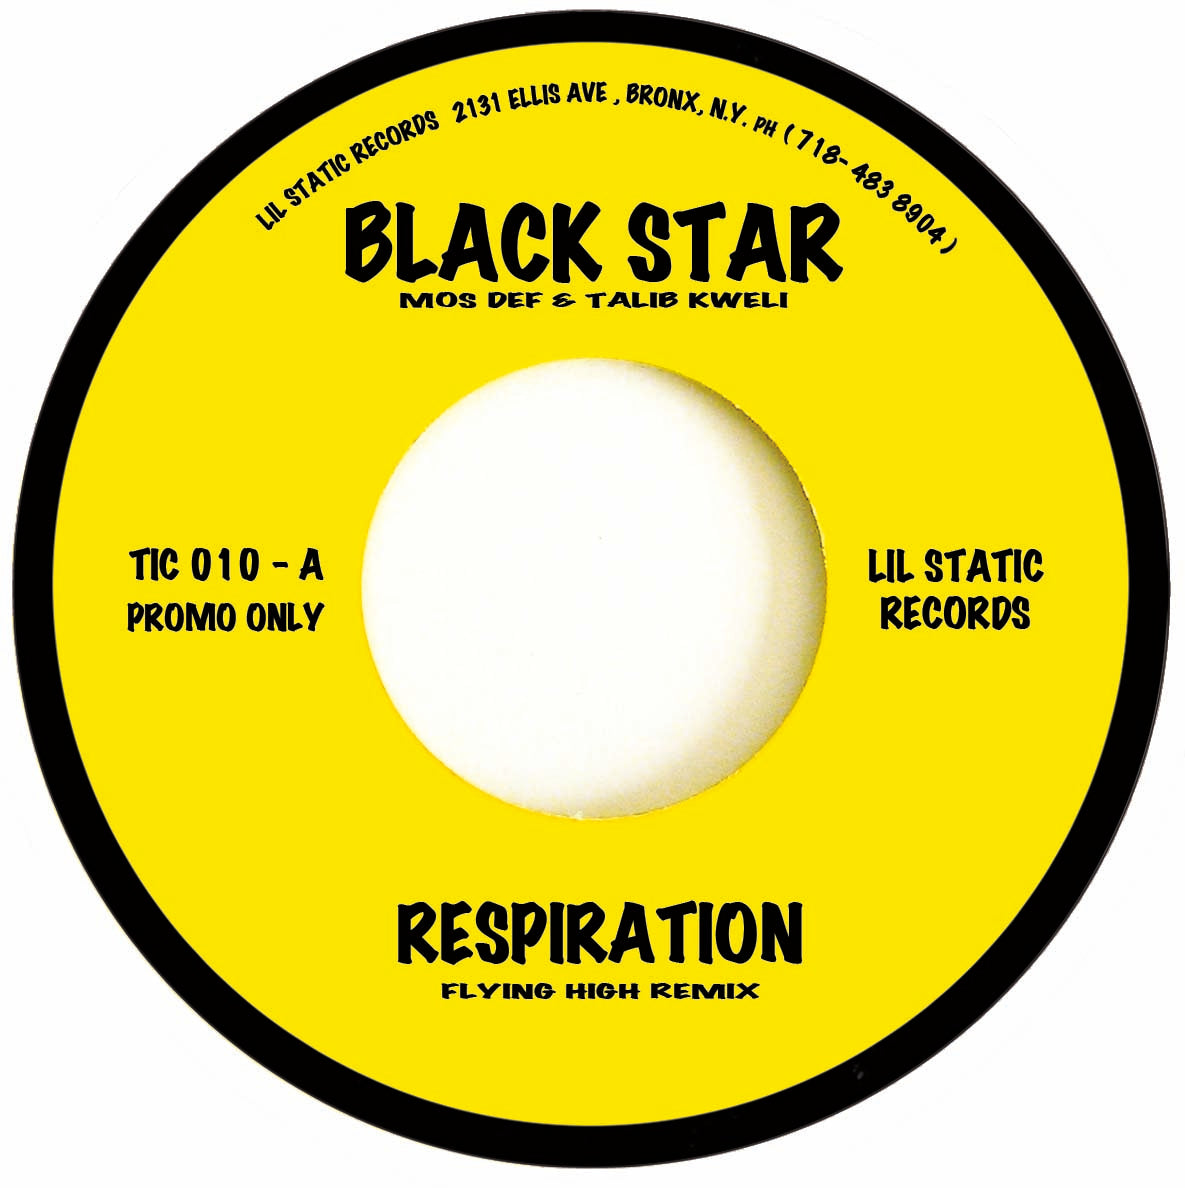 Black Star (Mos Def & Talib Kweli) - Respiration (Remix) b/w (Original